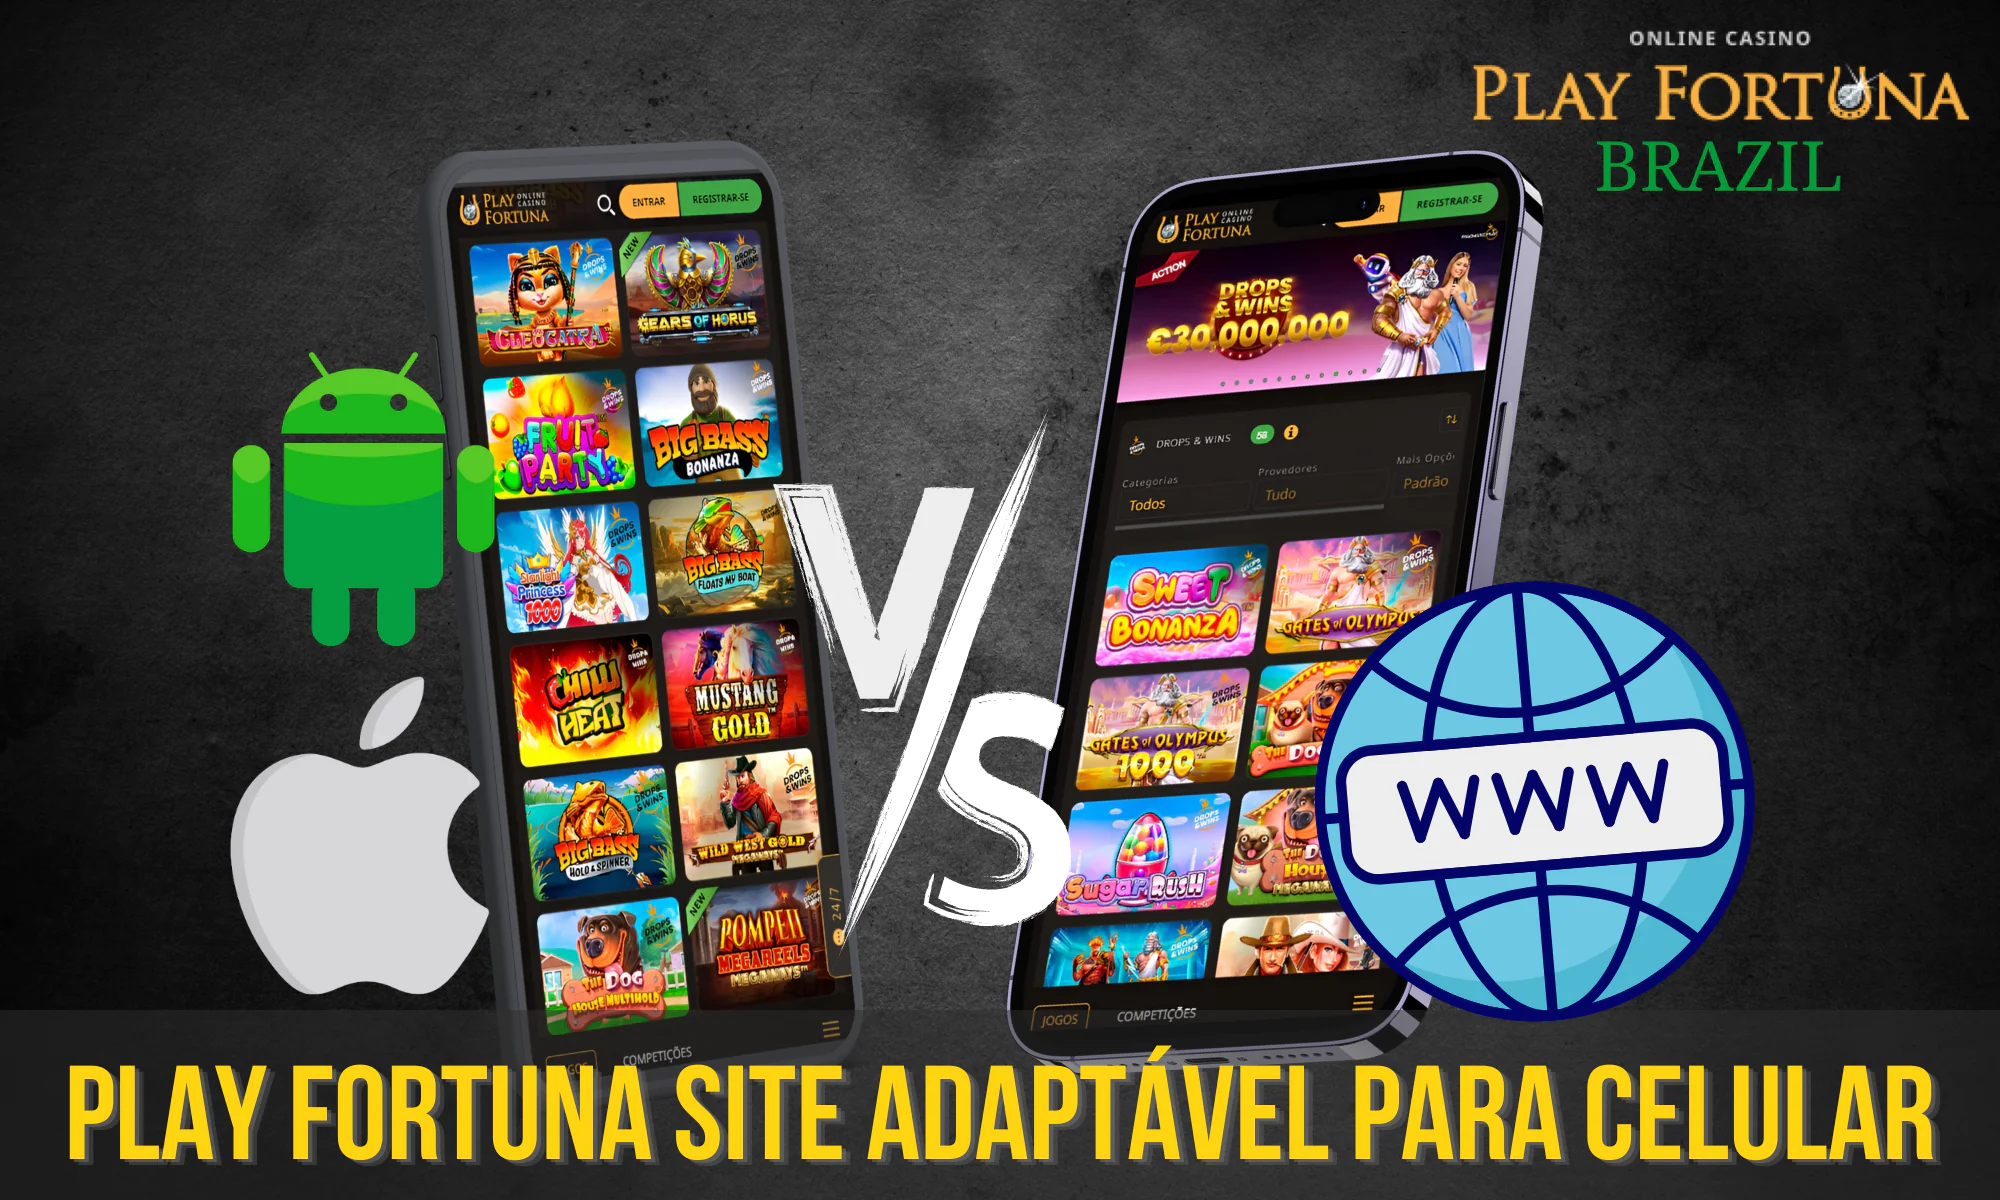 Comparação entre a versão do navegador e o aplicativo Play Fortuna